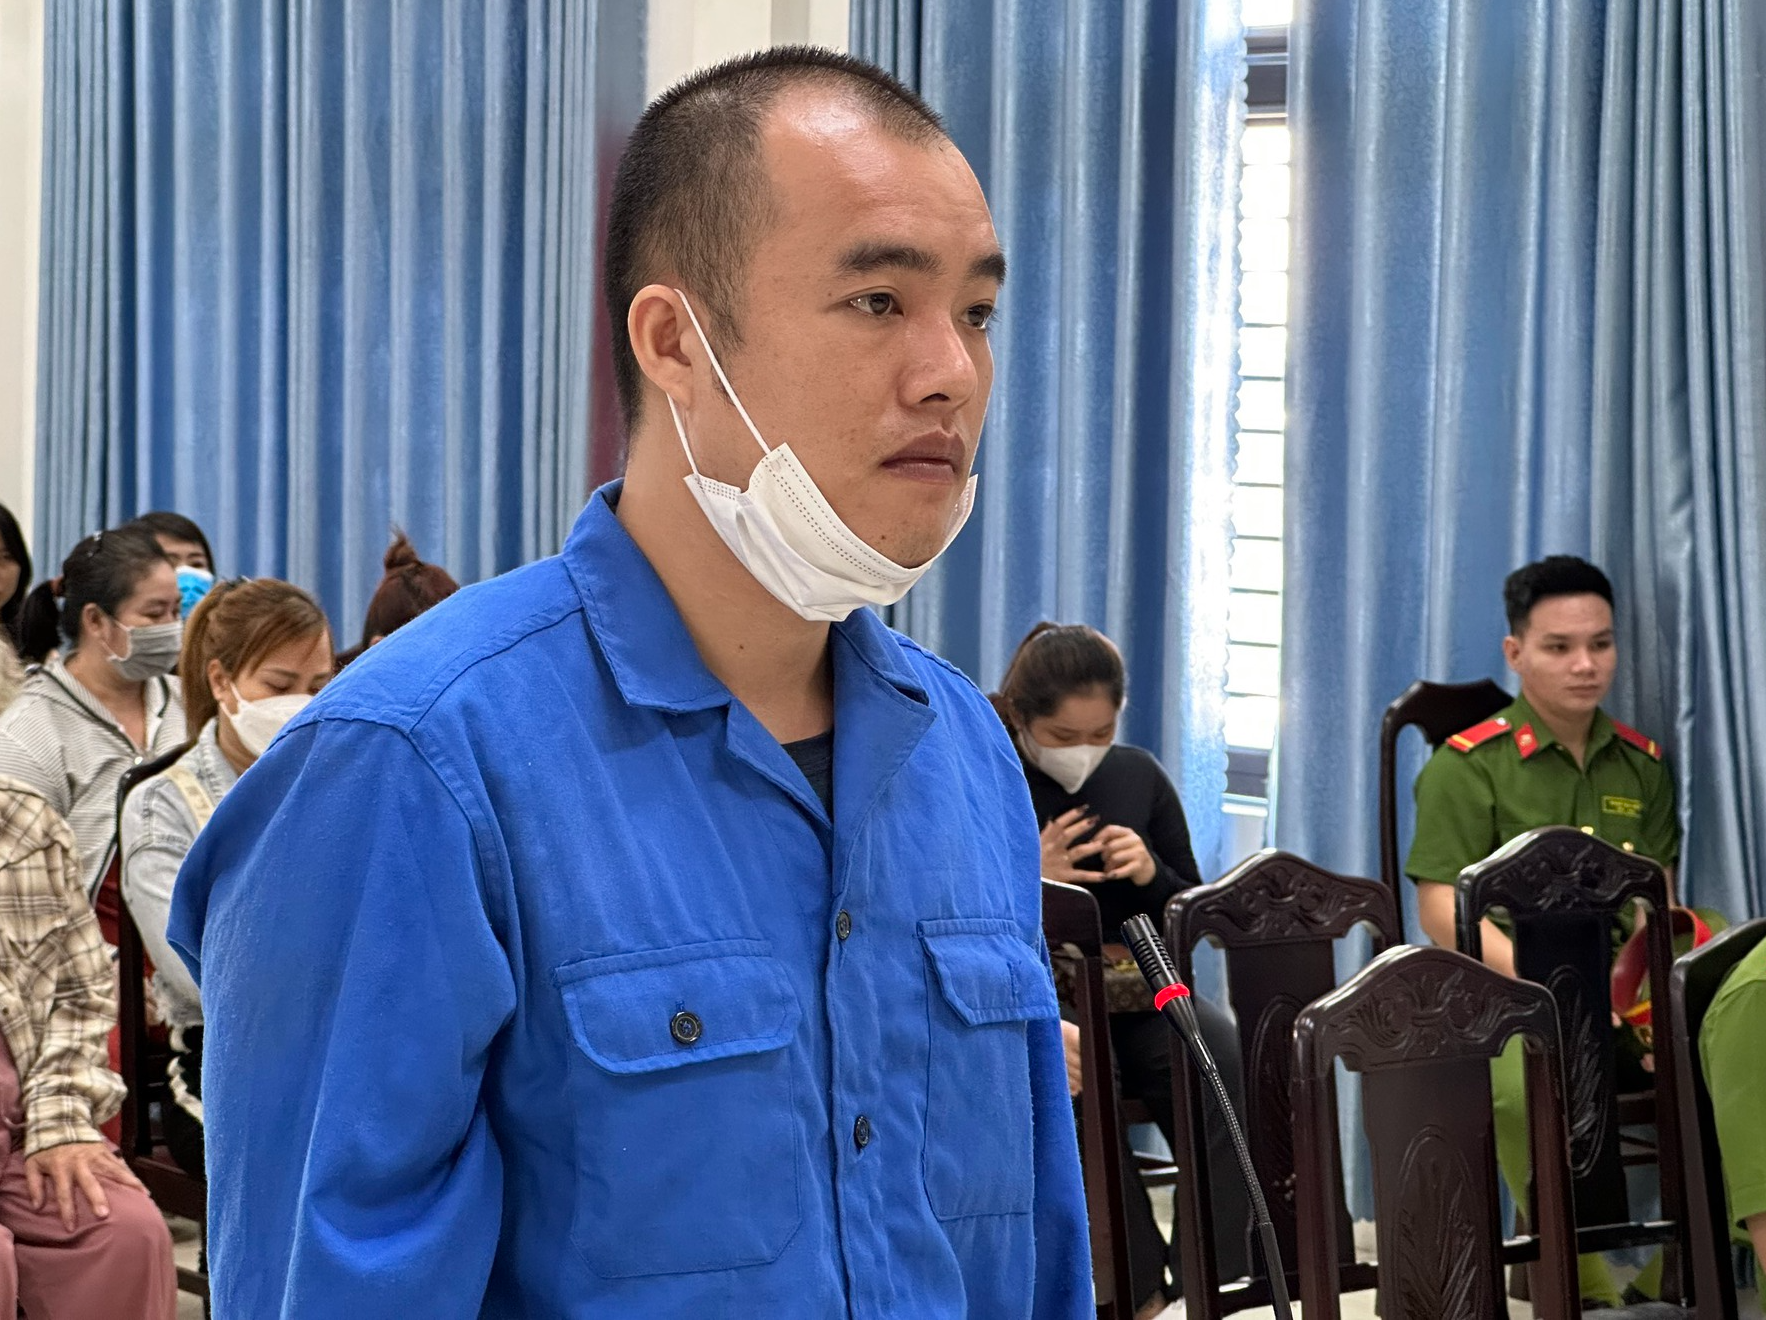 Đà Nẵng: Xét xử 2 bị cáo lợi dụng bệnh viện để giao nhận ma túy